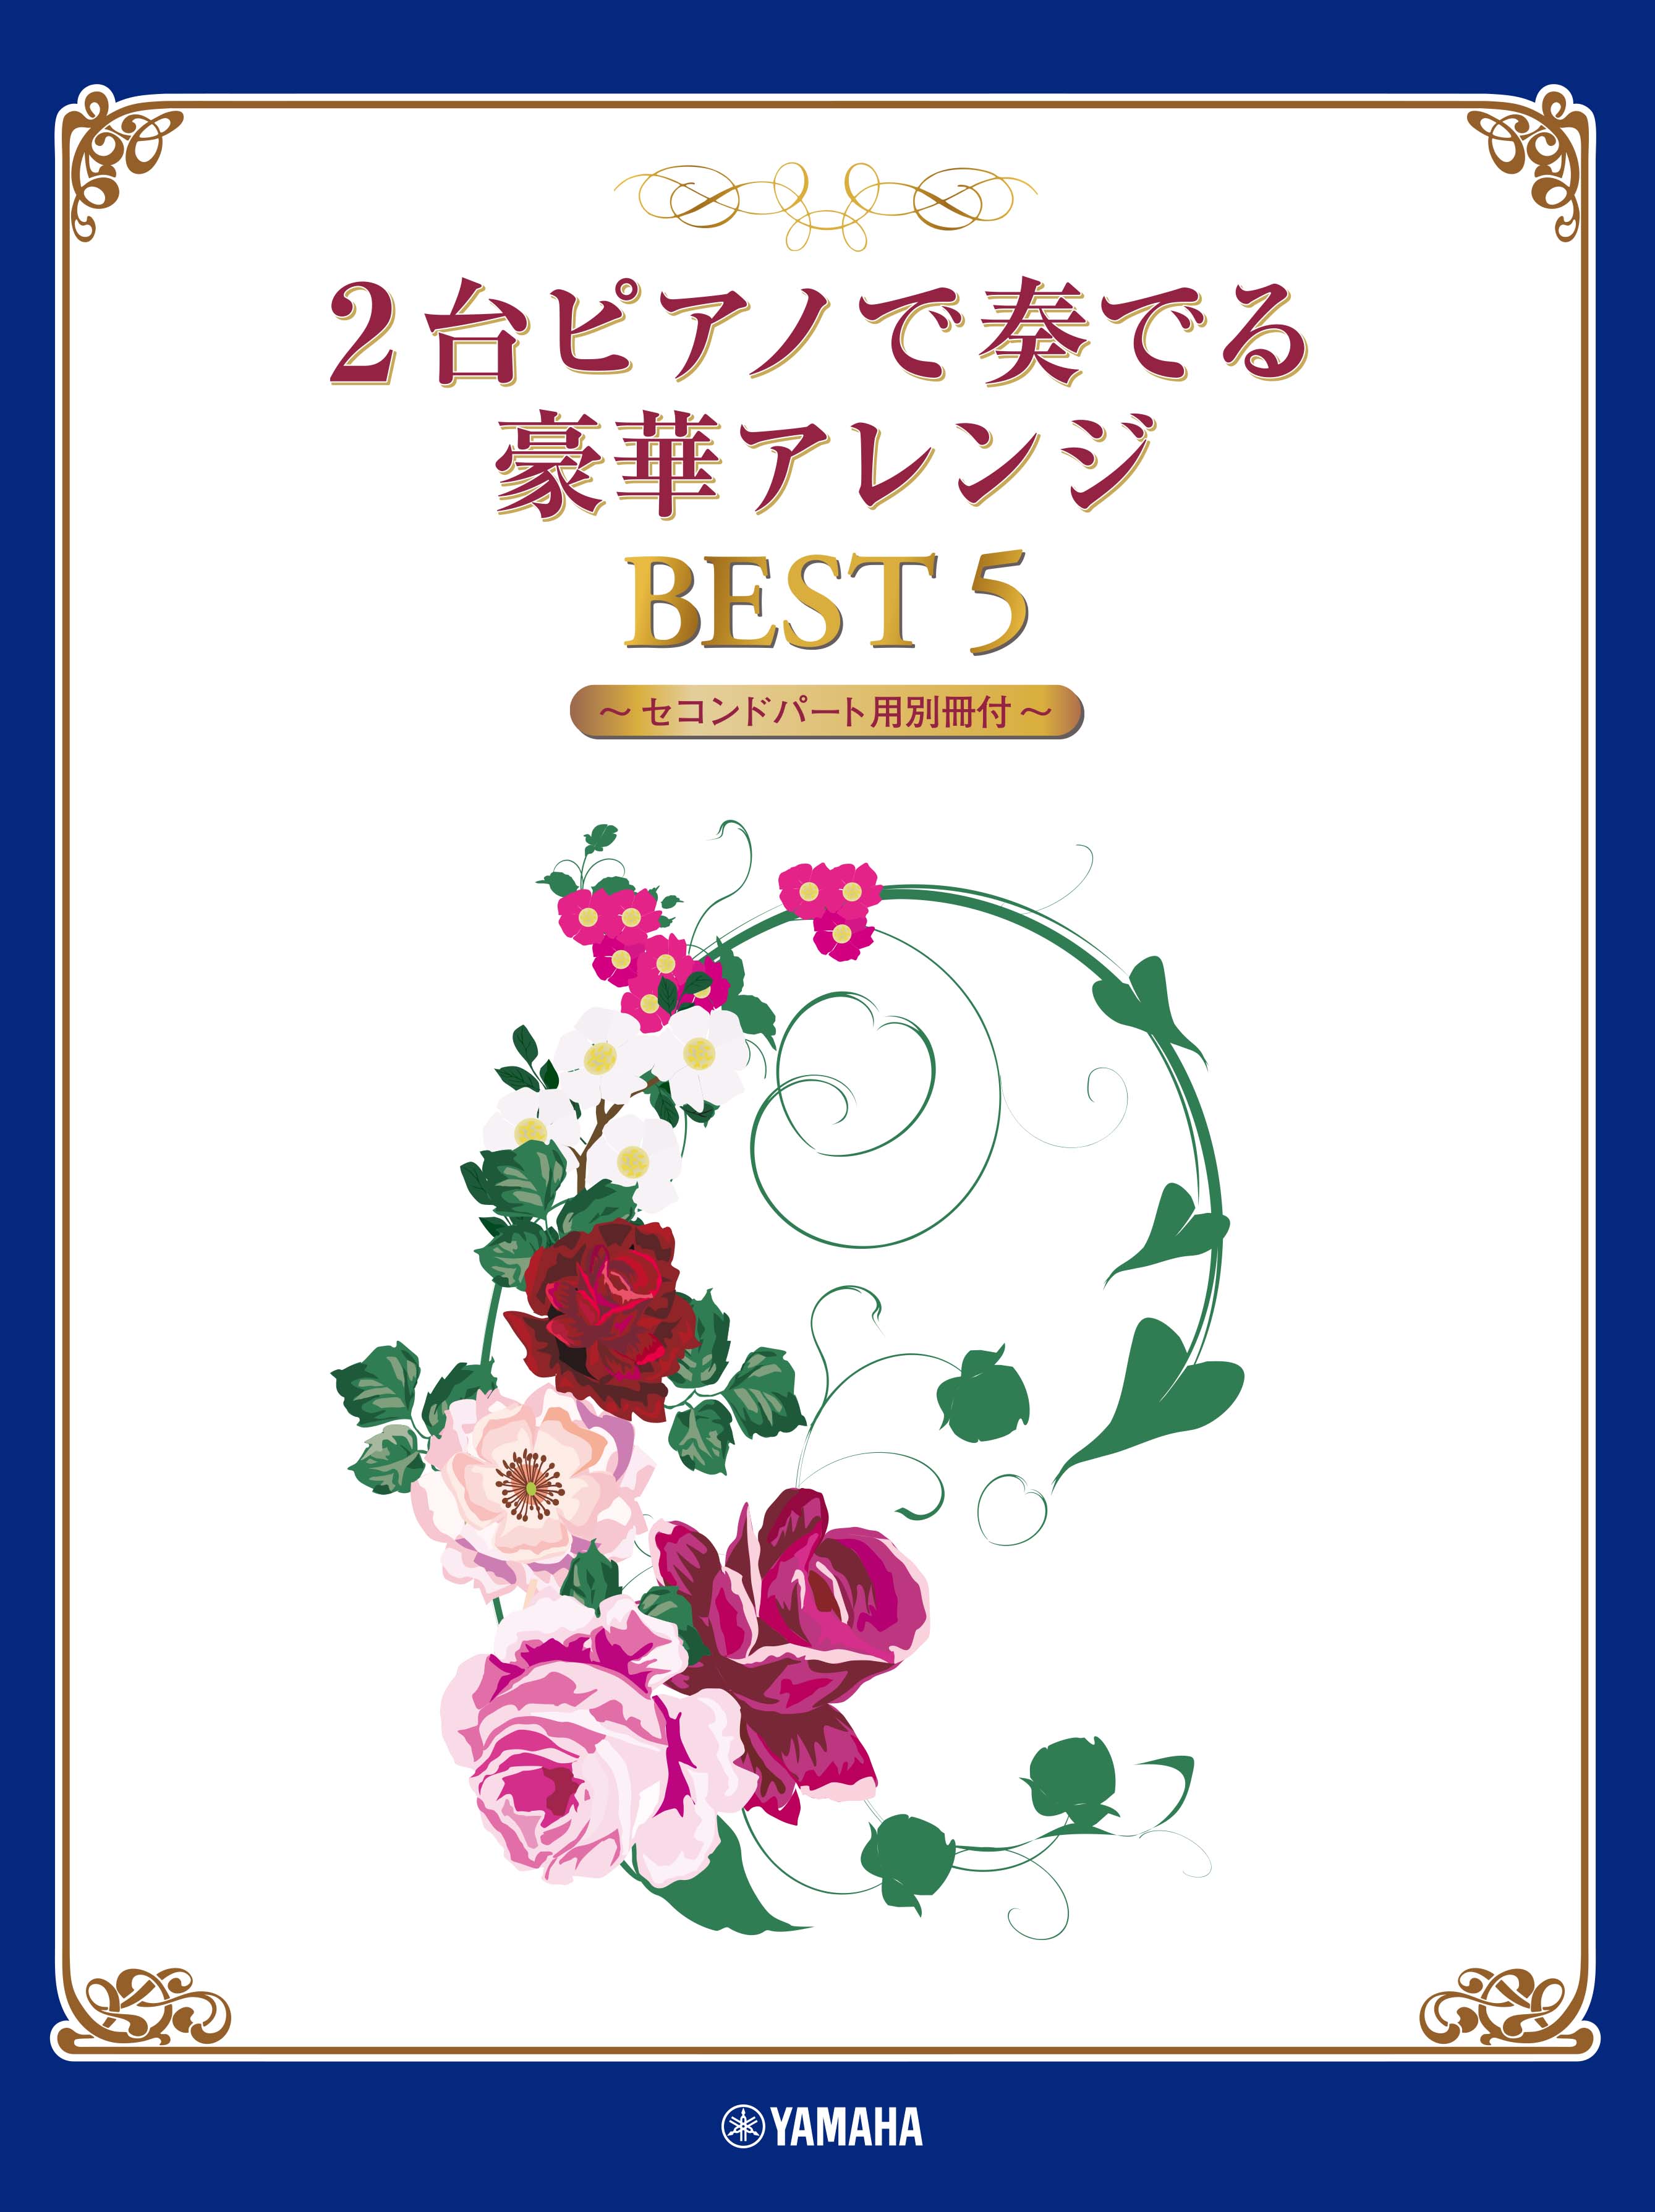 『2台ピアノで奏でる豪華アレンジ BEST 5 【セコンドパート用別冊付】』好評発売中！